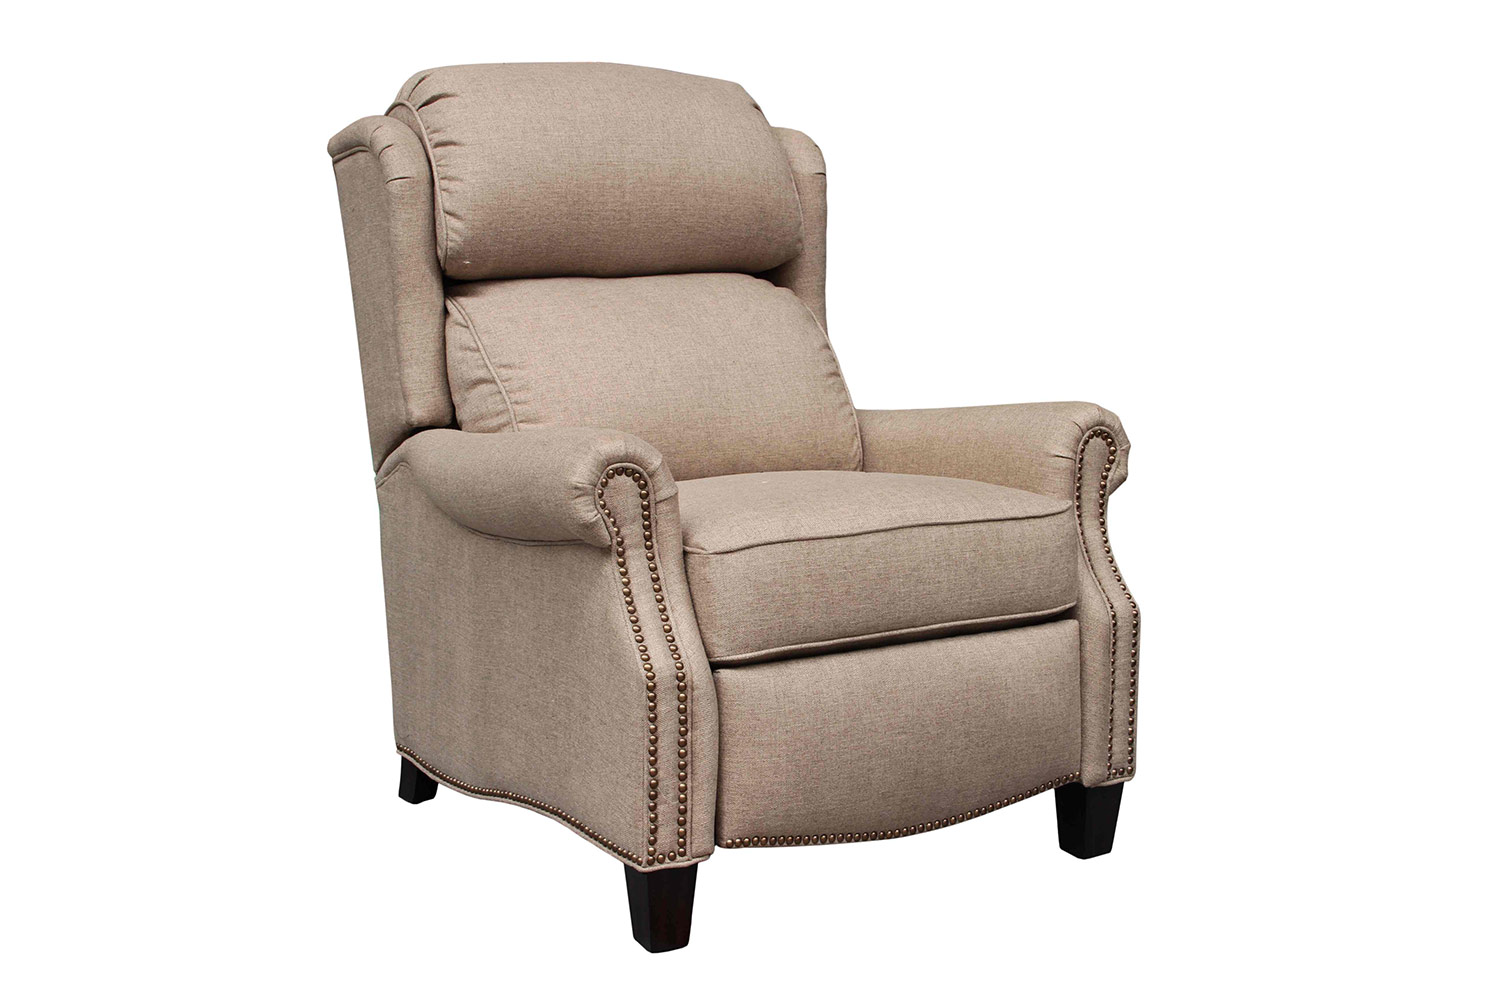 Barcalounger Meade Recliner Chair - Sisal fabric